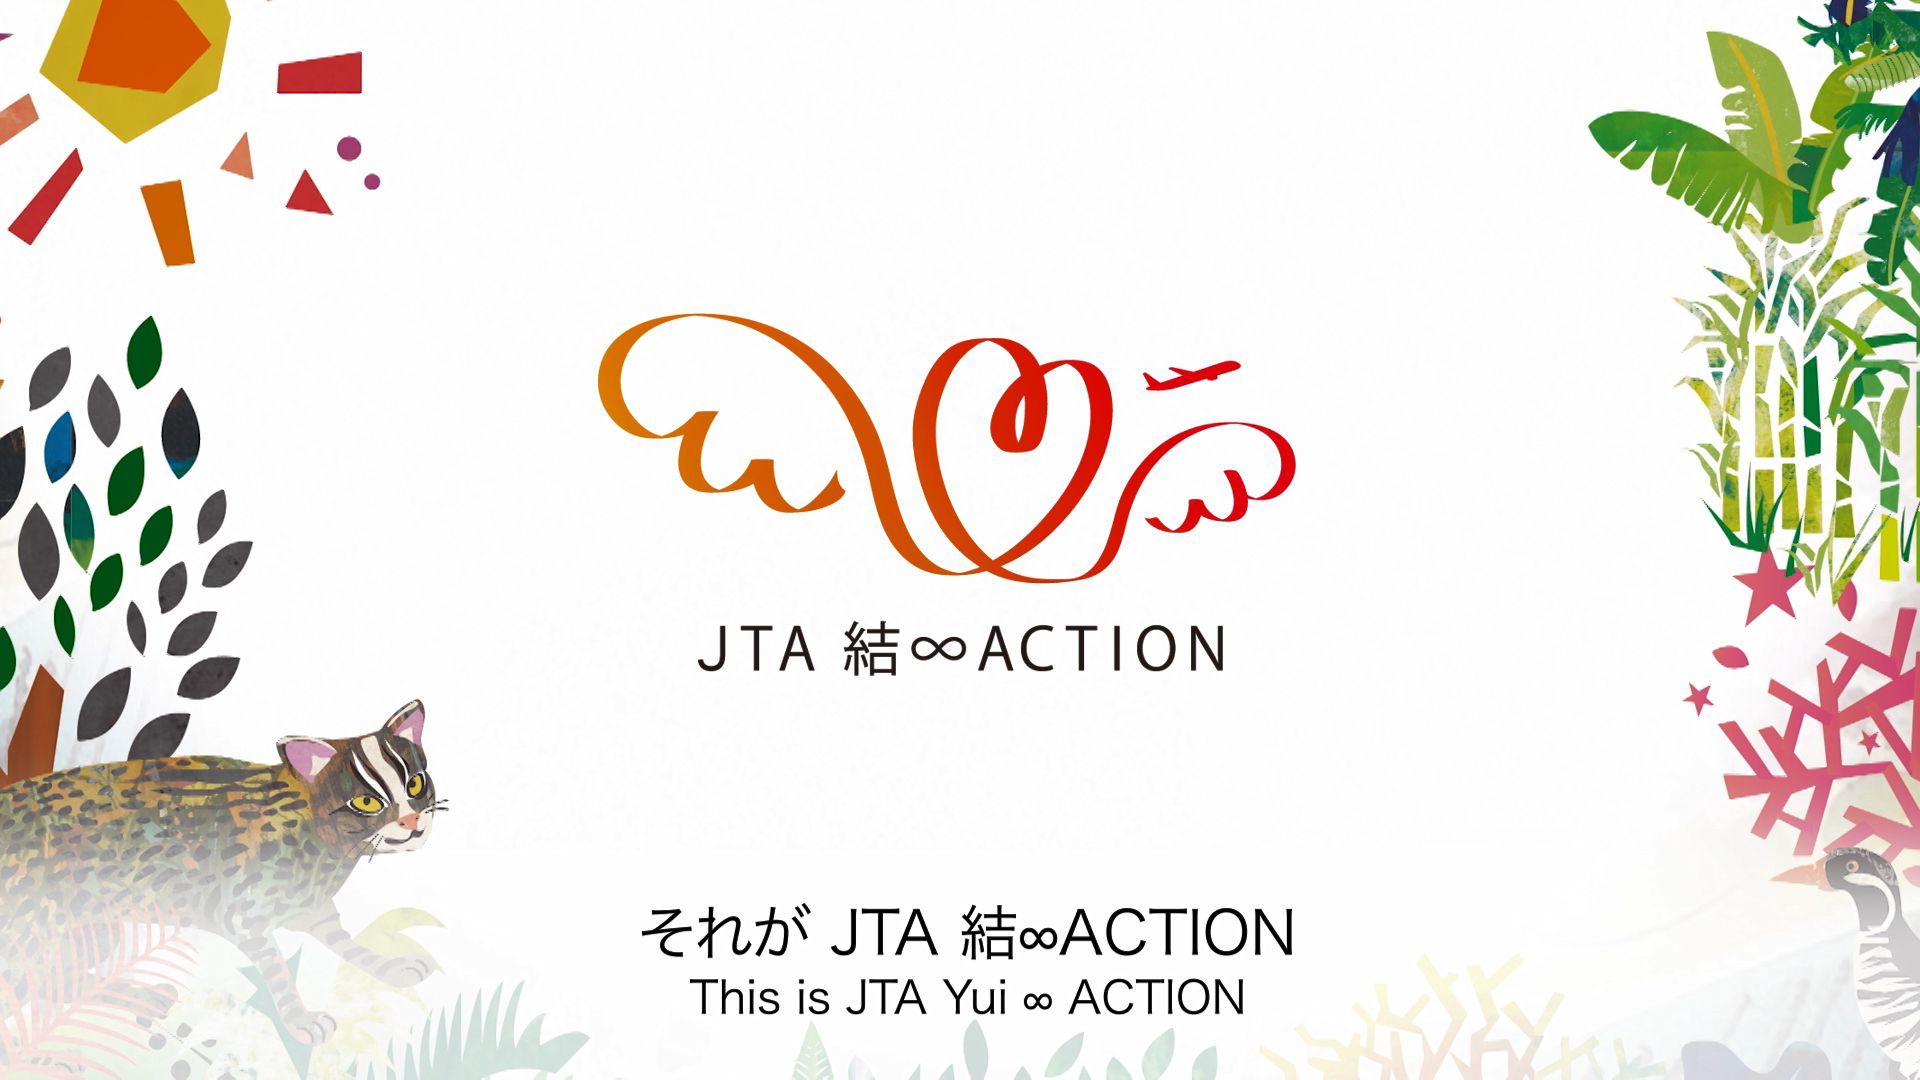 美ら島沖縄を未来へつなげる – JTA 結∞ACTION ロゴマーク・コンセプトムービー公開!!